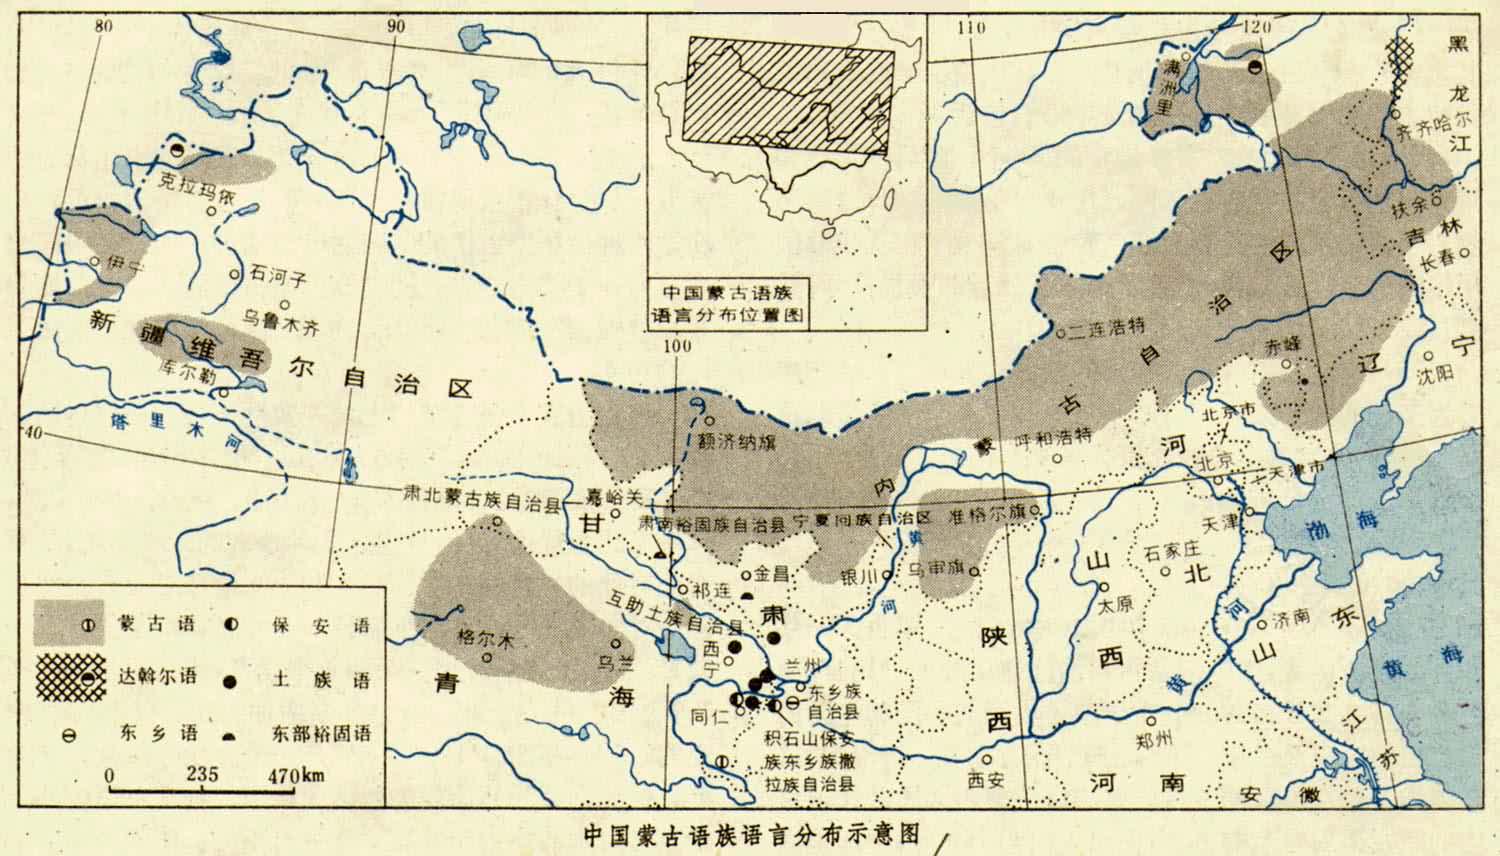 中国蒙古族语言分布示意图